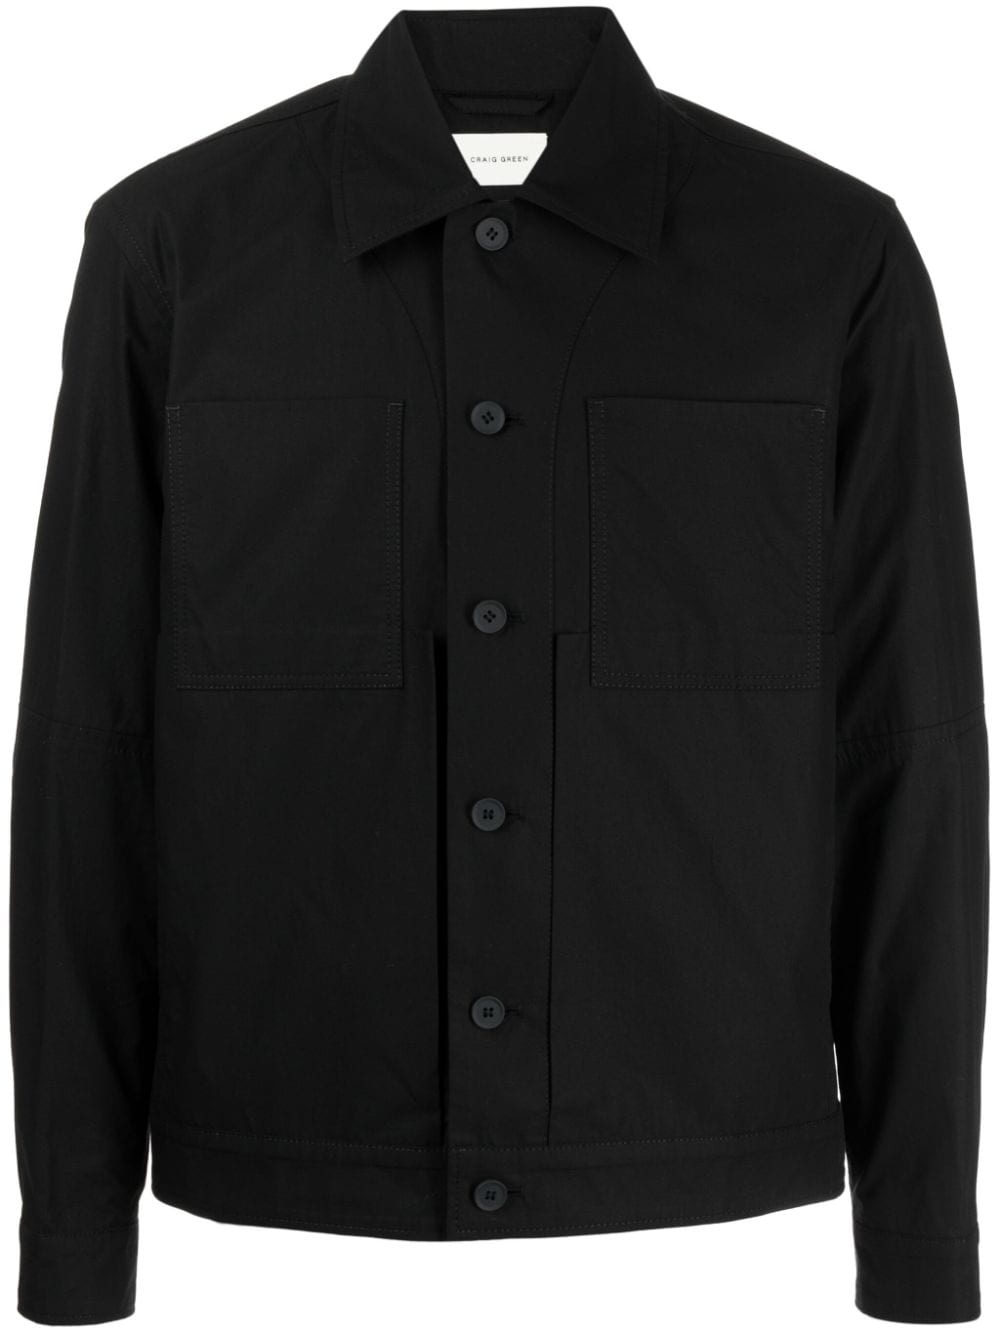 classic-collar shirt jacket - 1